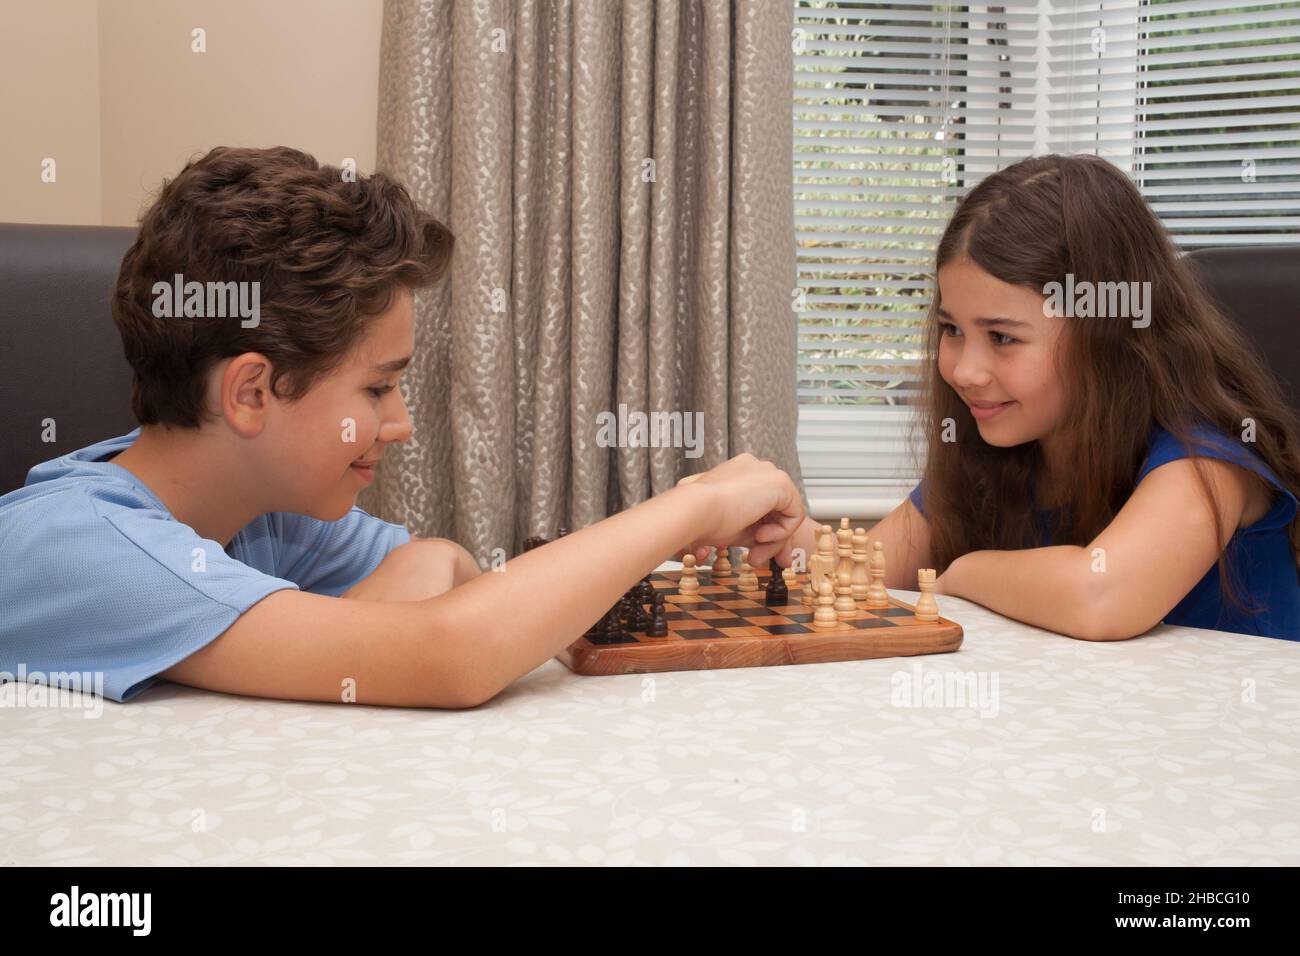 Un frère et une sœur jouant ensemble des échecs, pris le 13 août 2020 à Wool, Dorset, Royaume-Uni Banque D'Images